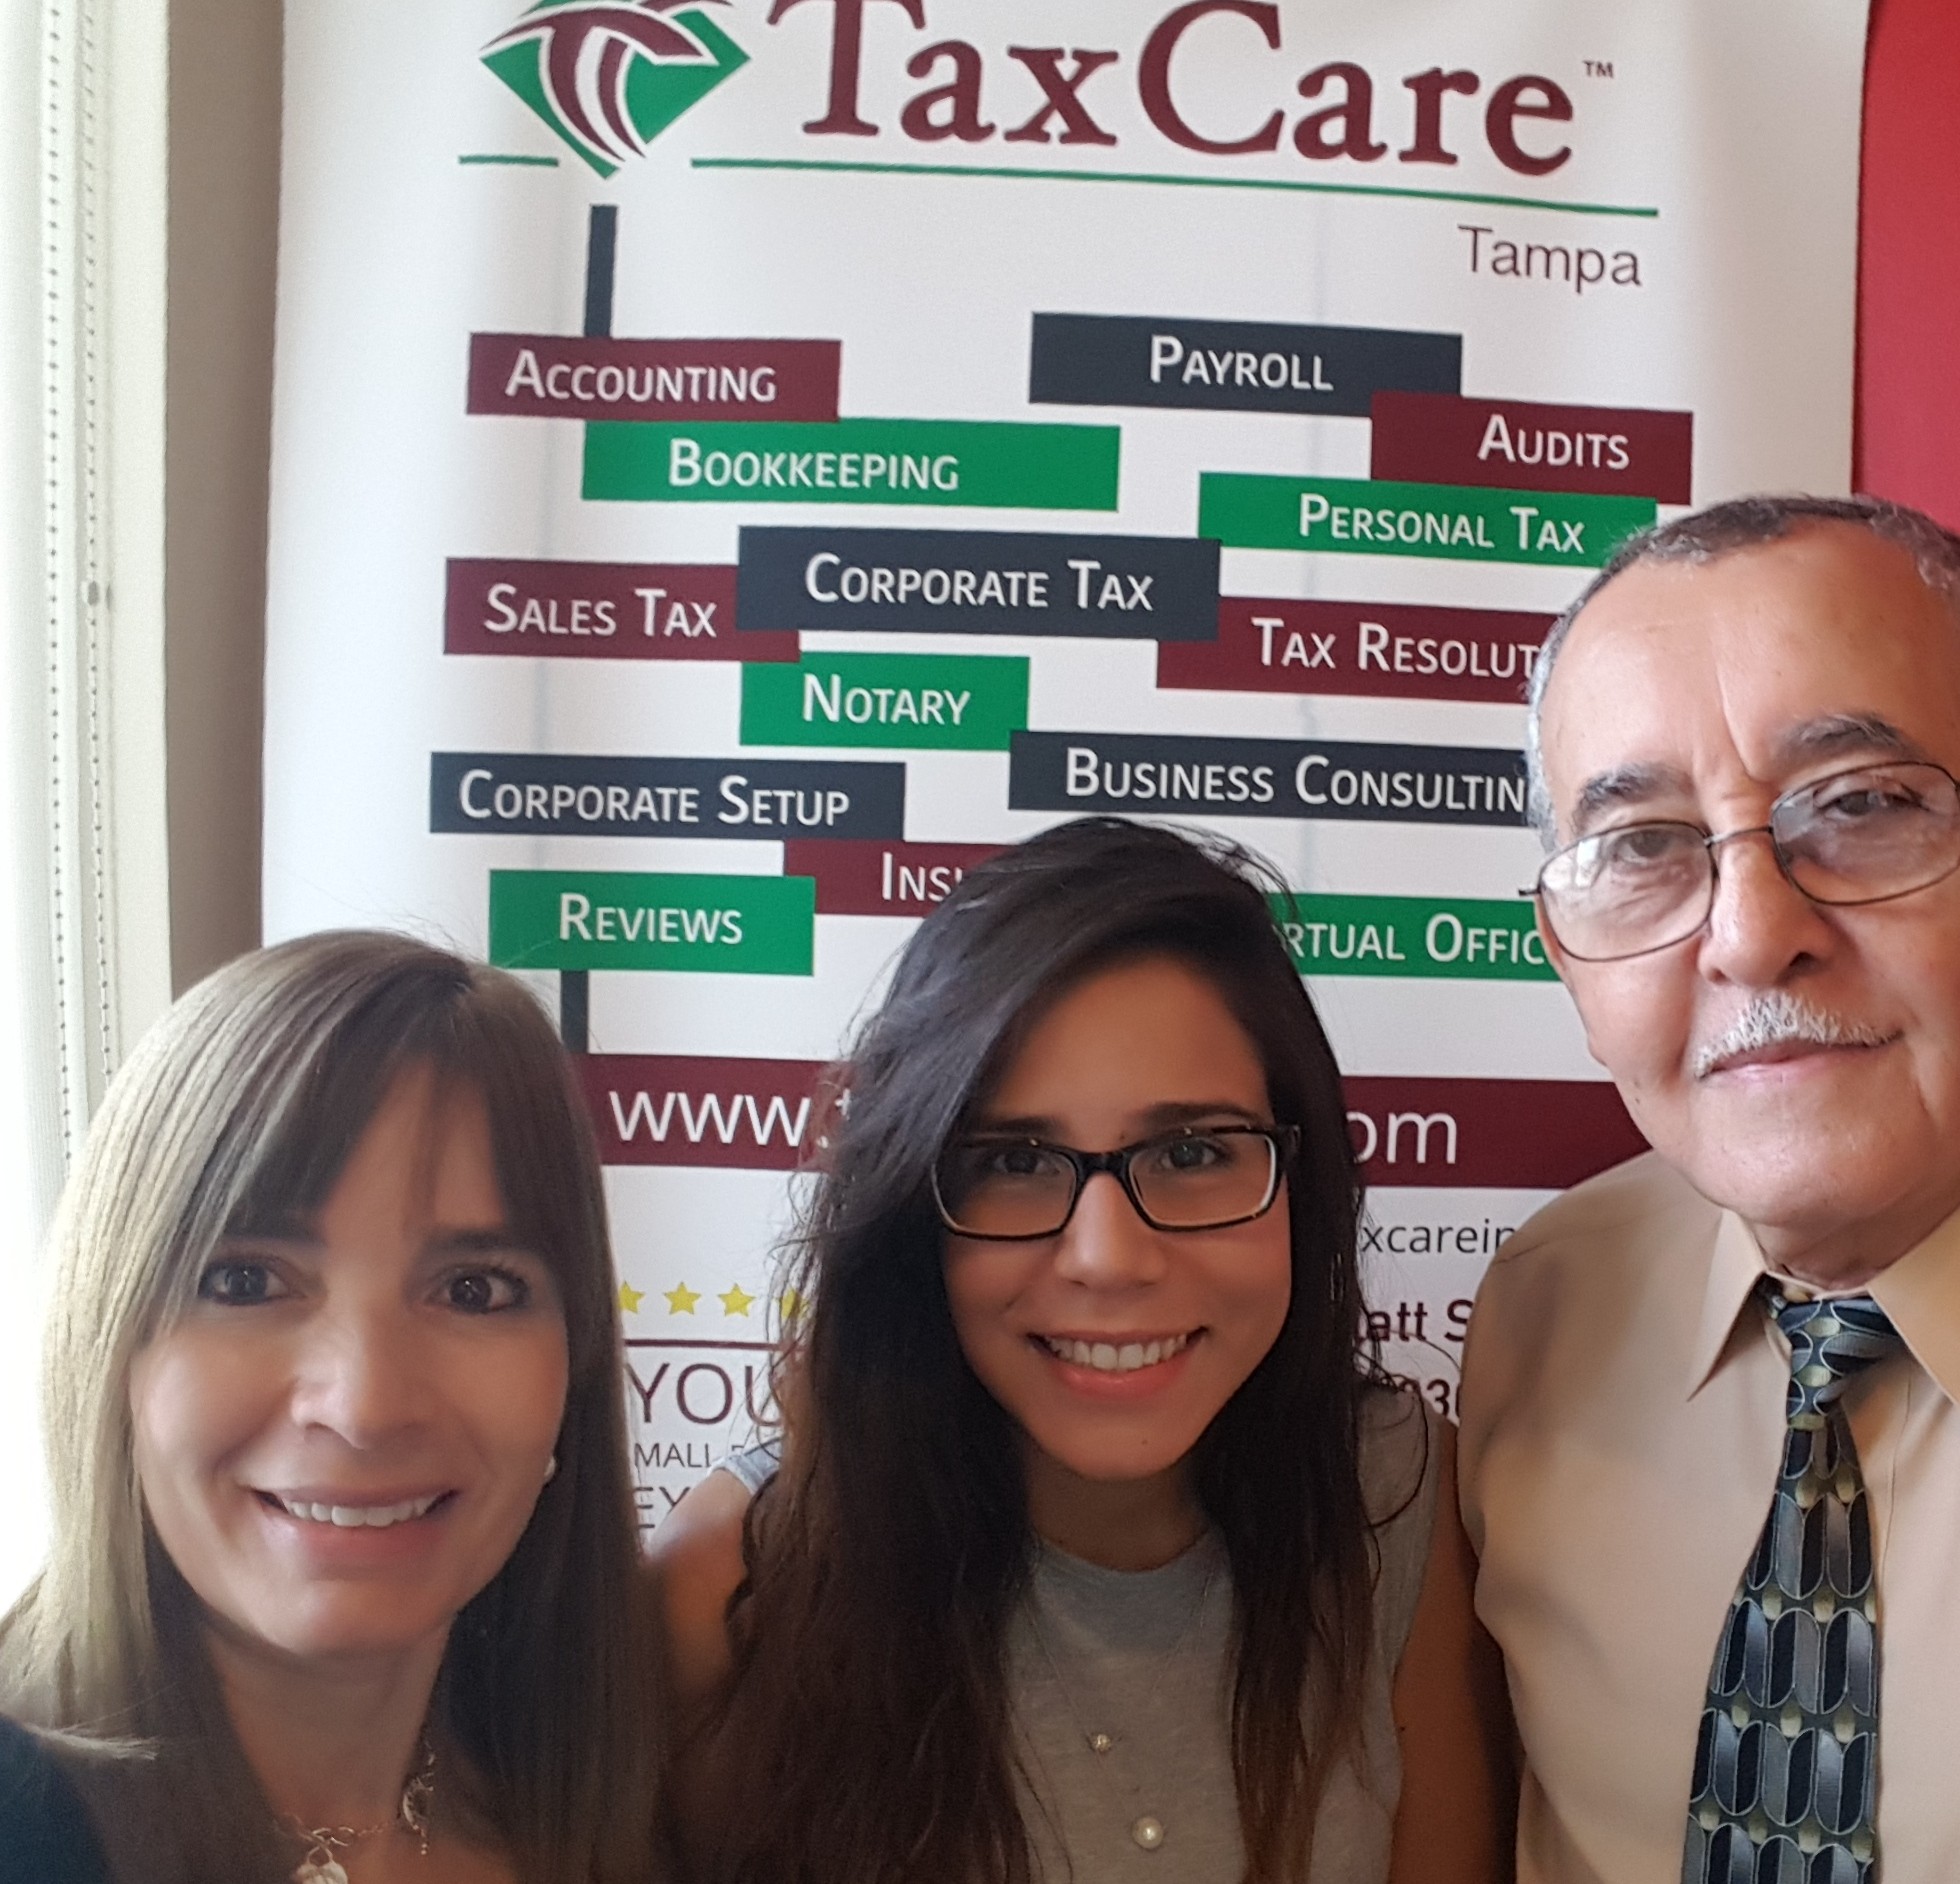 Tax Care Tampa